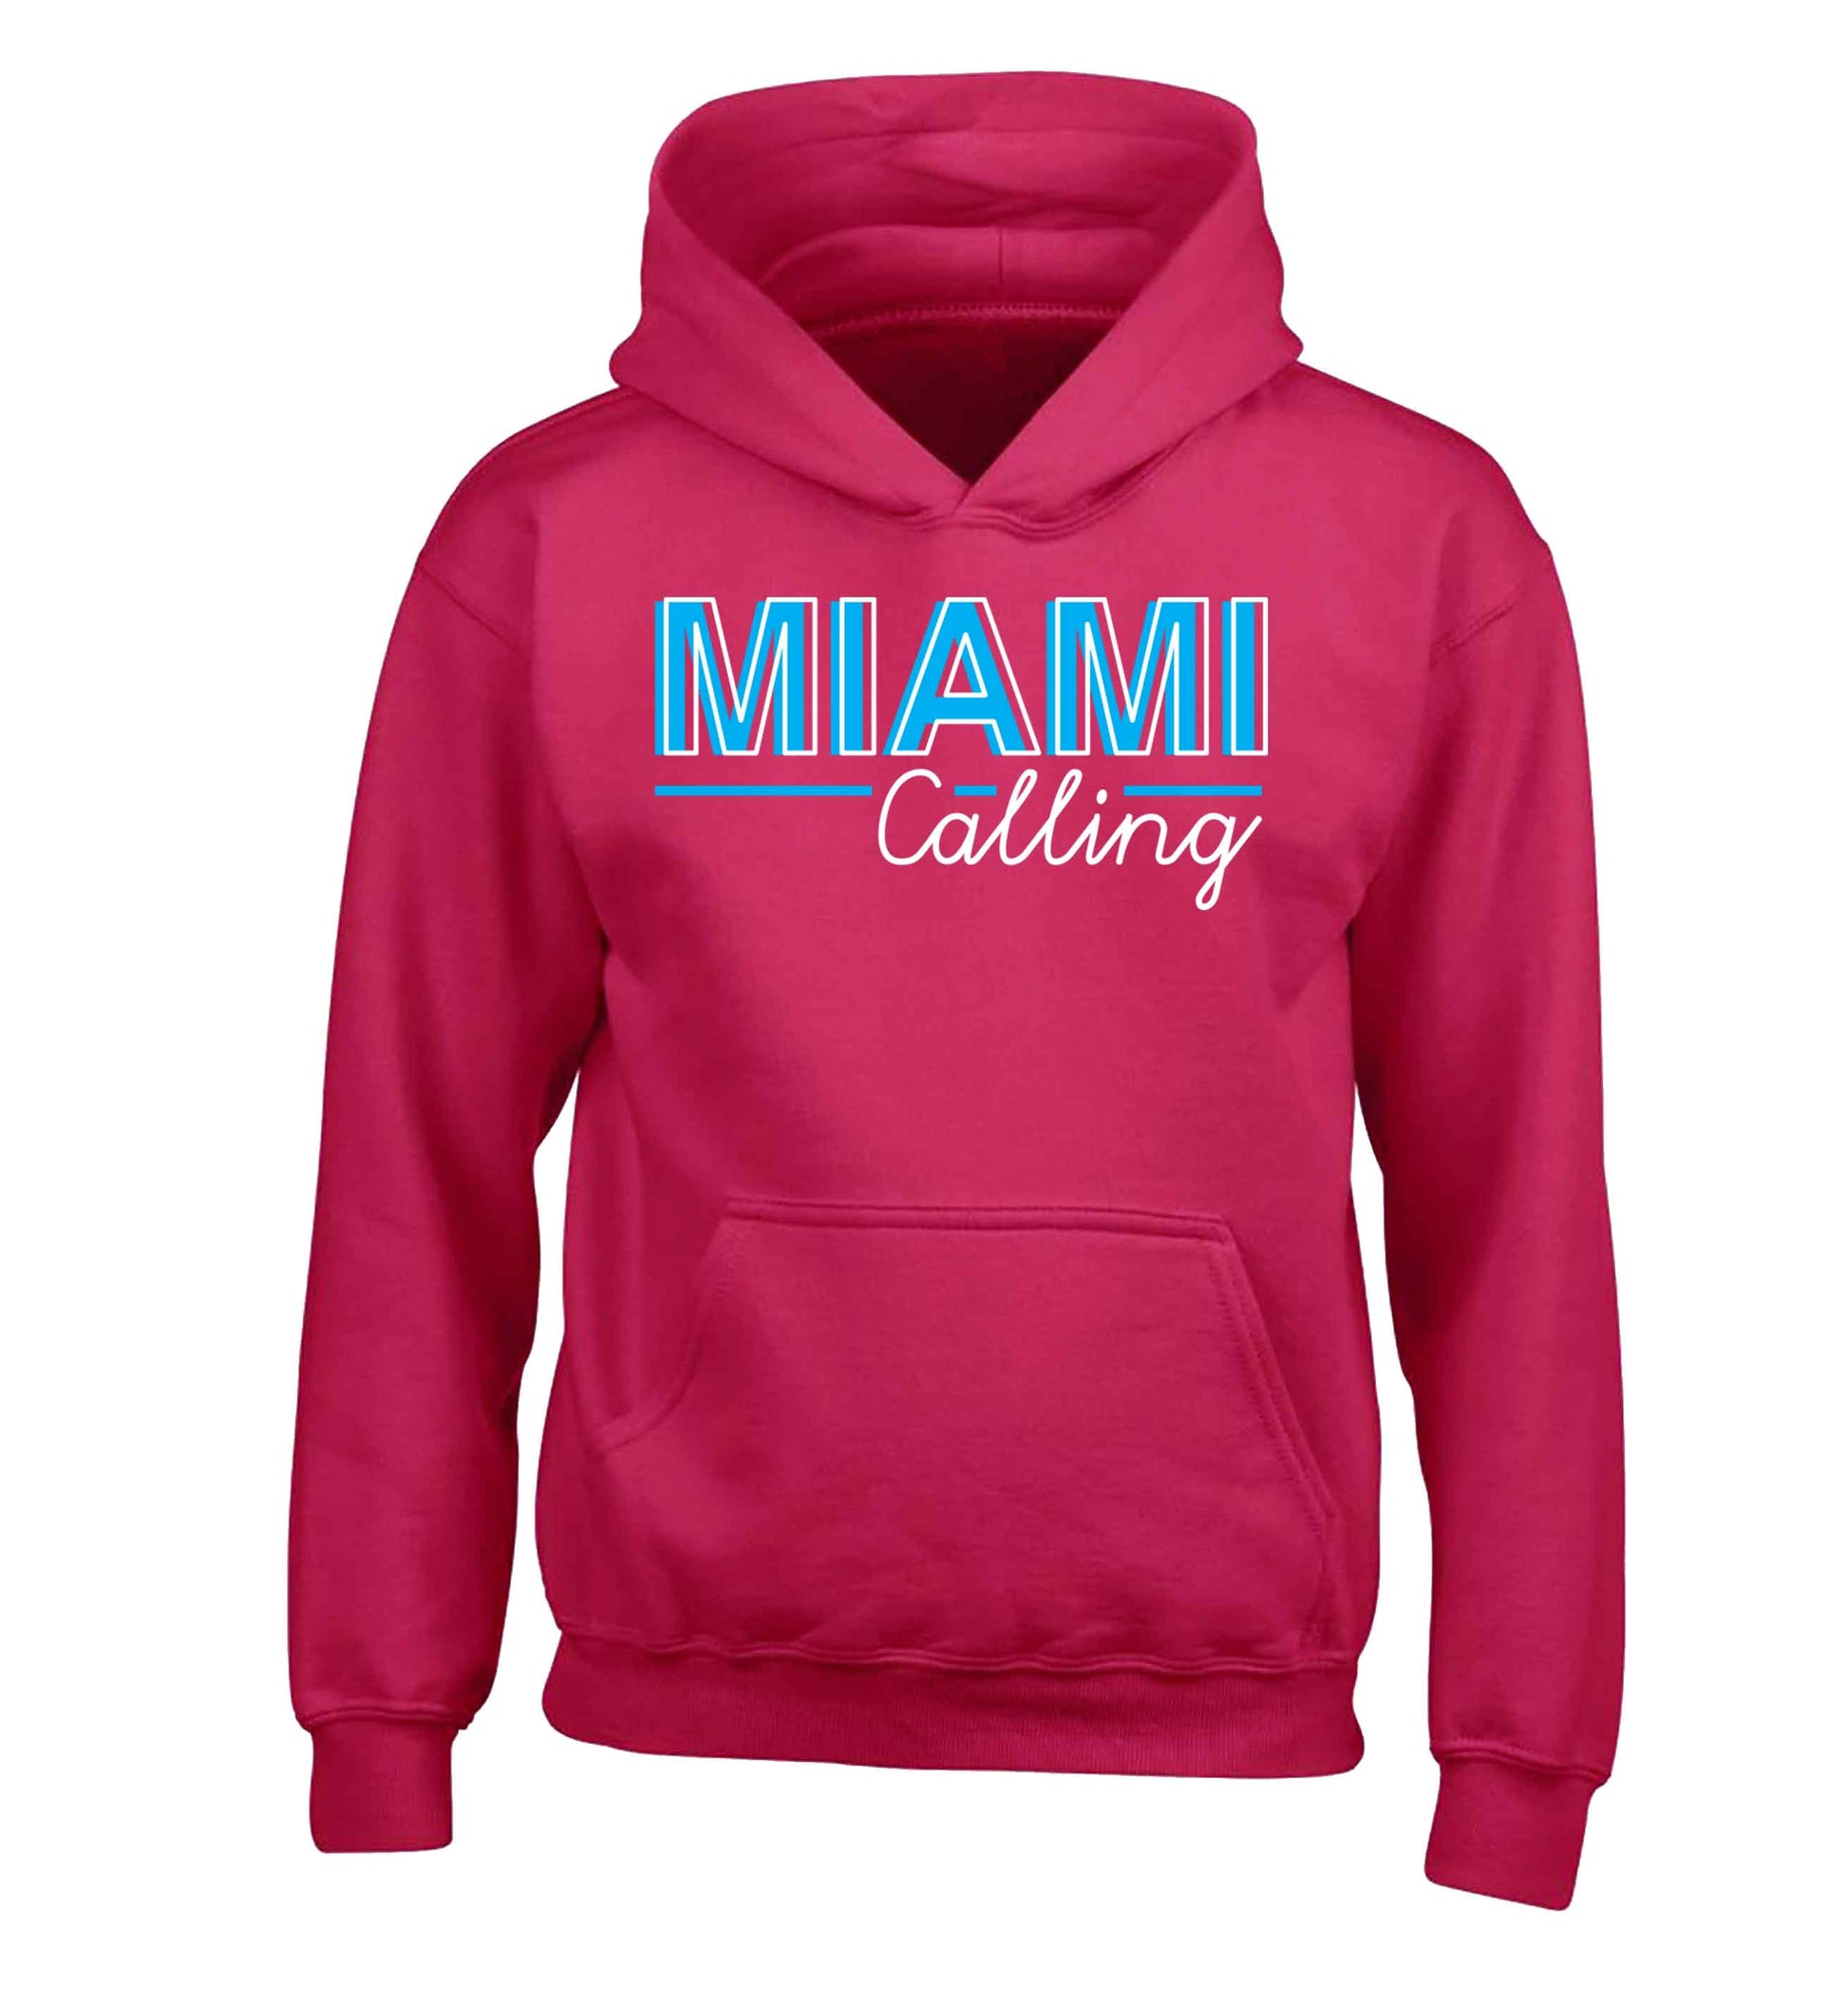 Miami calling children's pink hoodie 12-13 Years